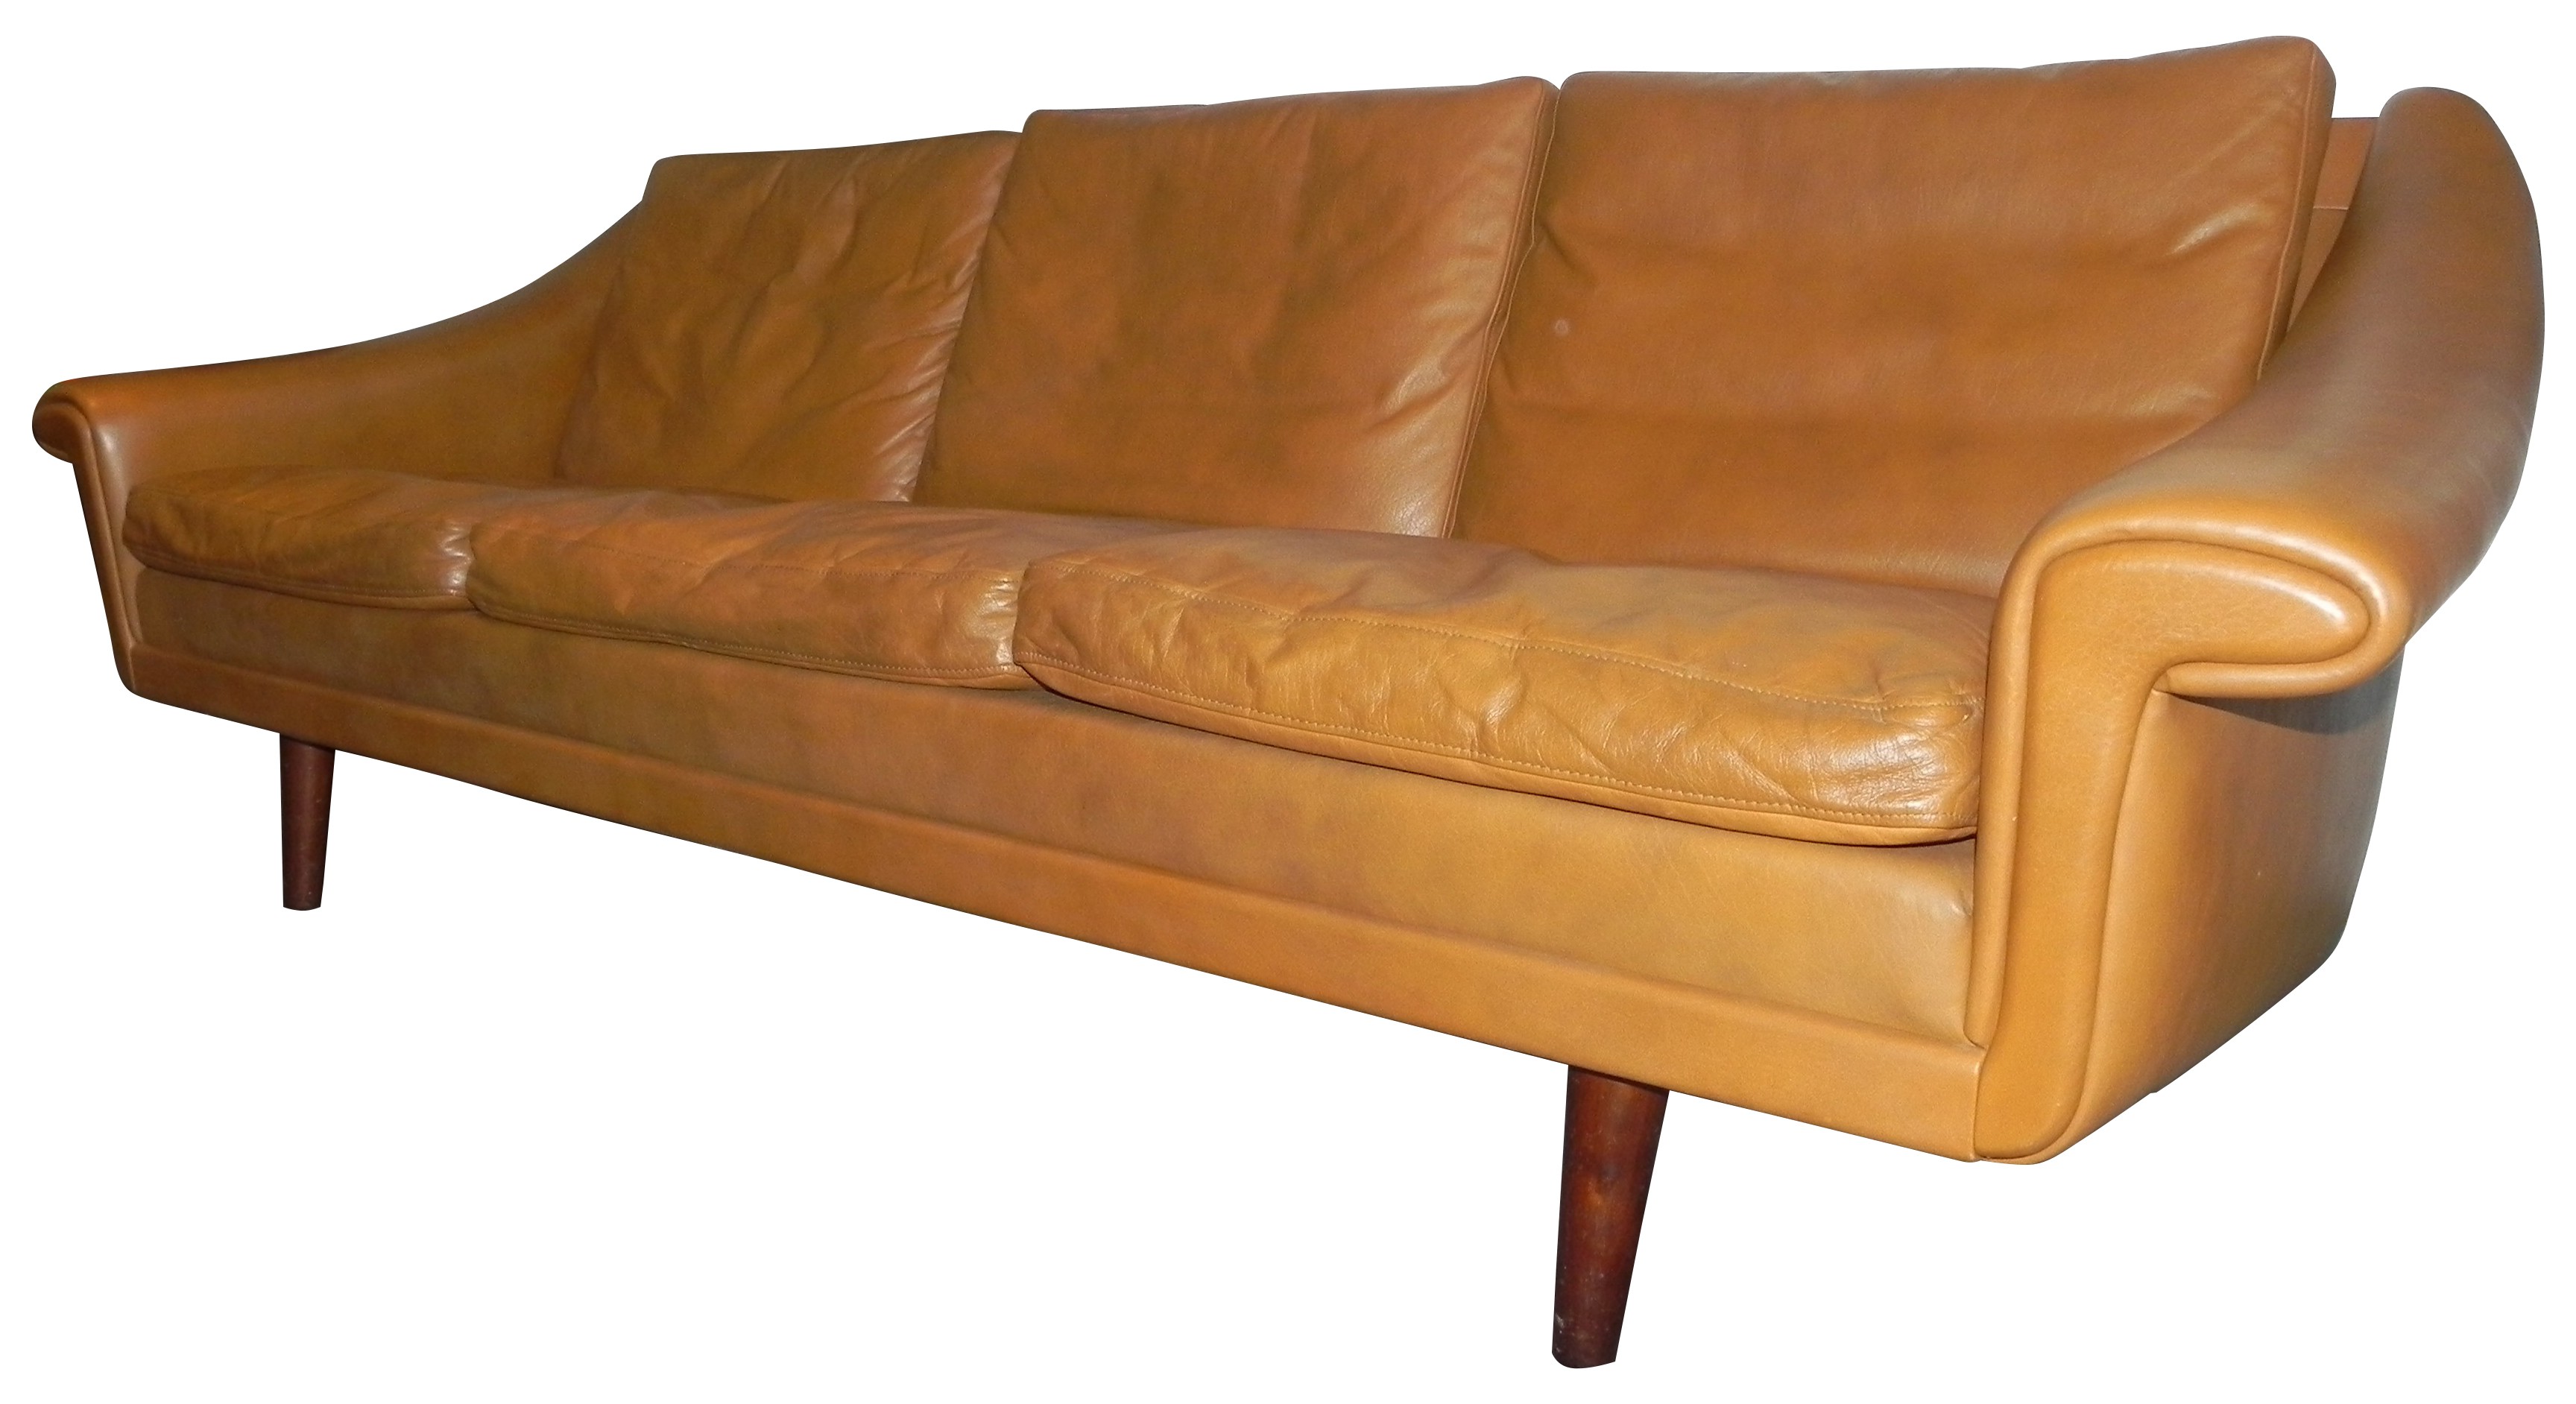  Scandinavian  sofa  in soft Havana leather 1970s Design 